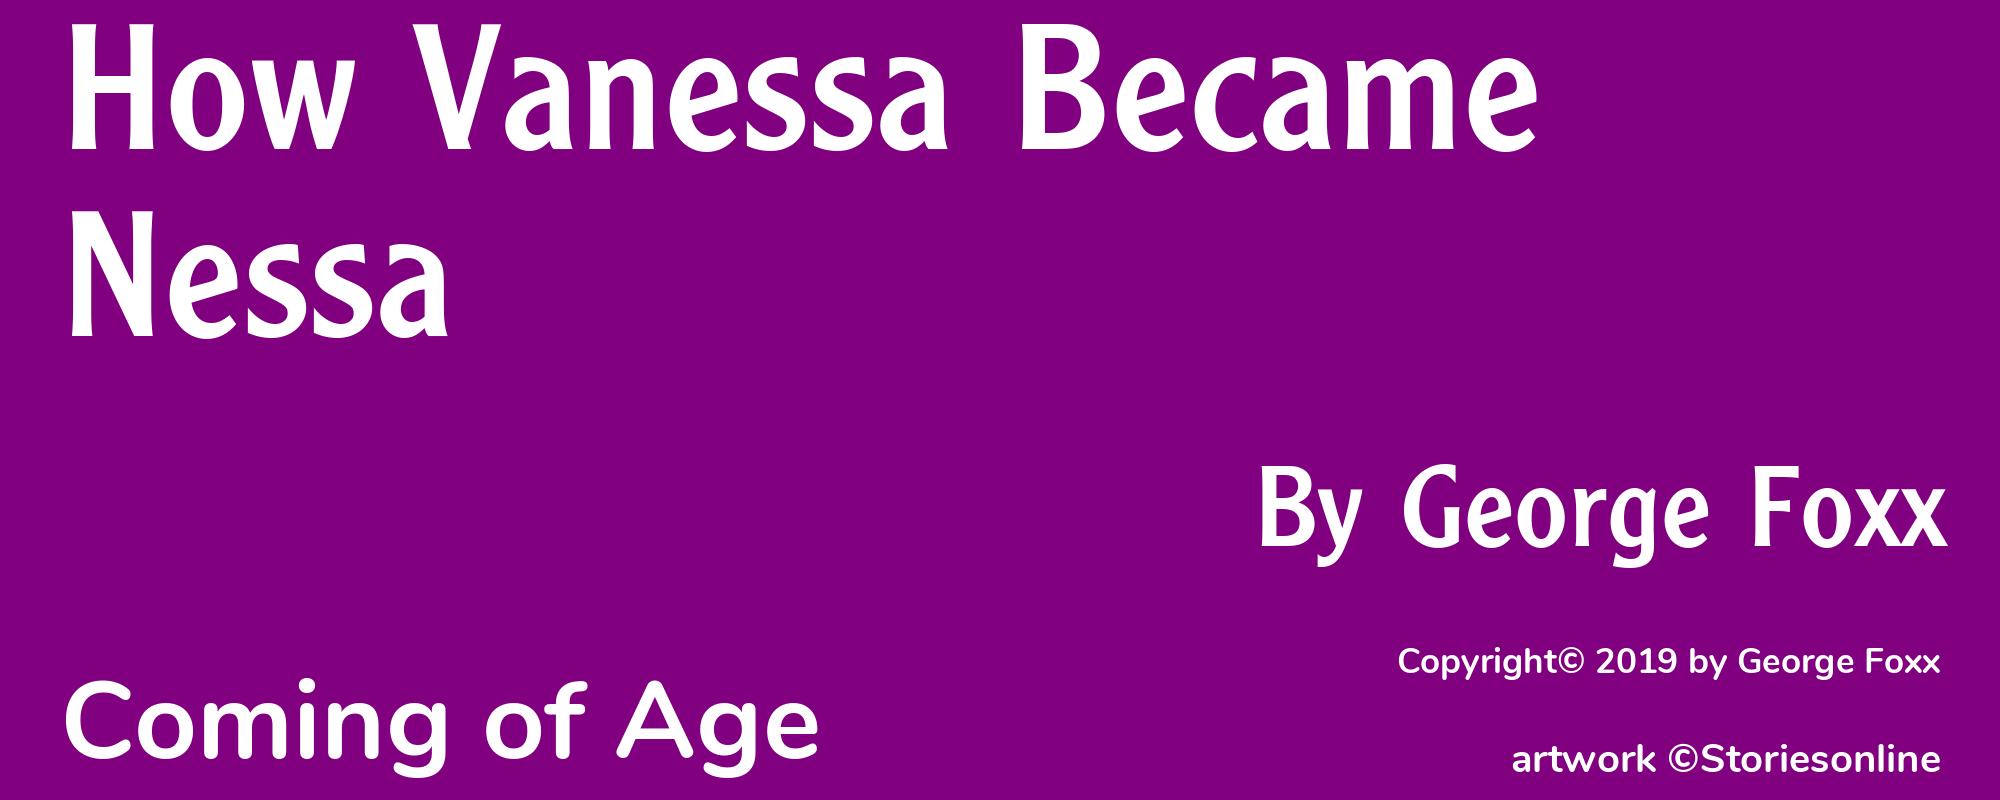 How Vanessa Became Nessa - Cover